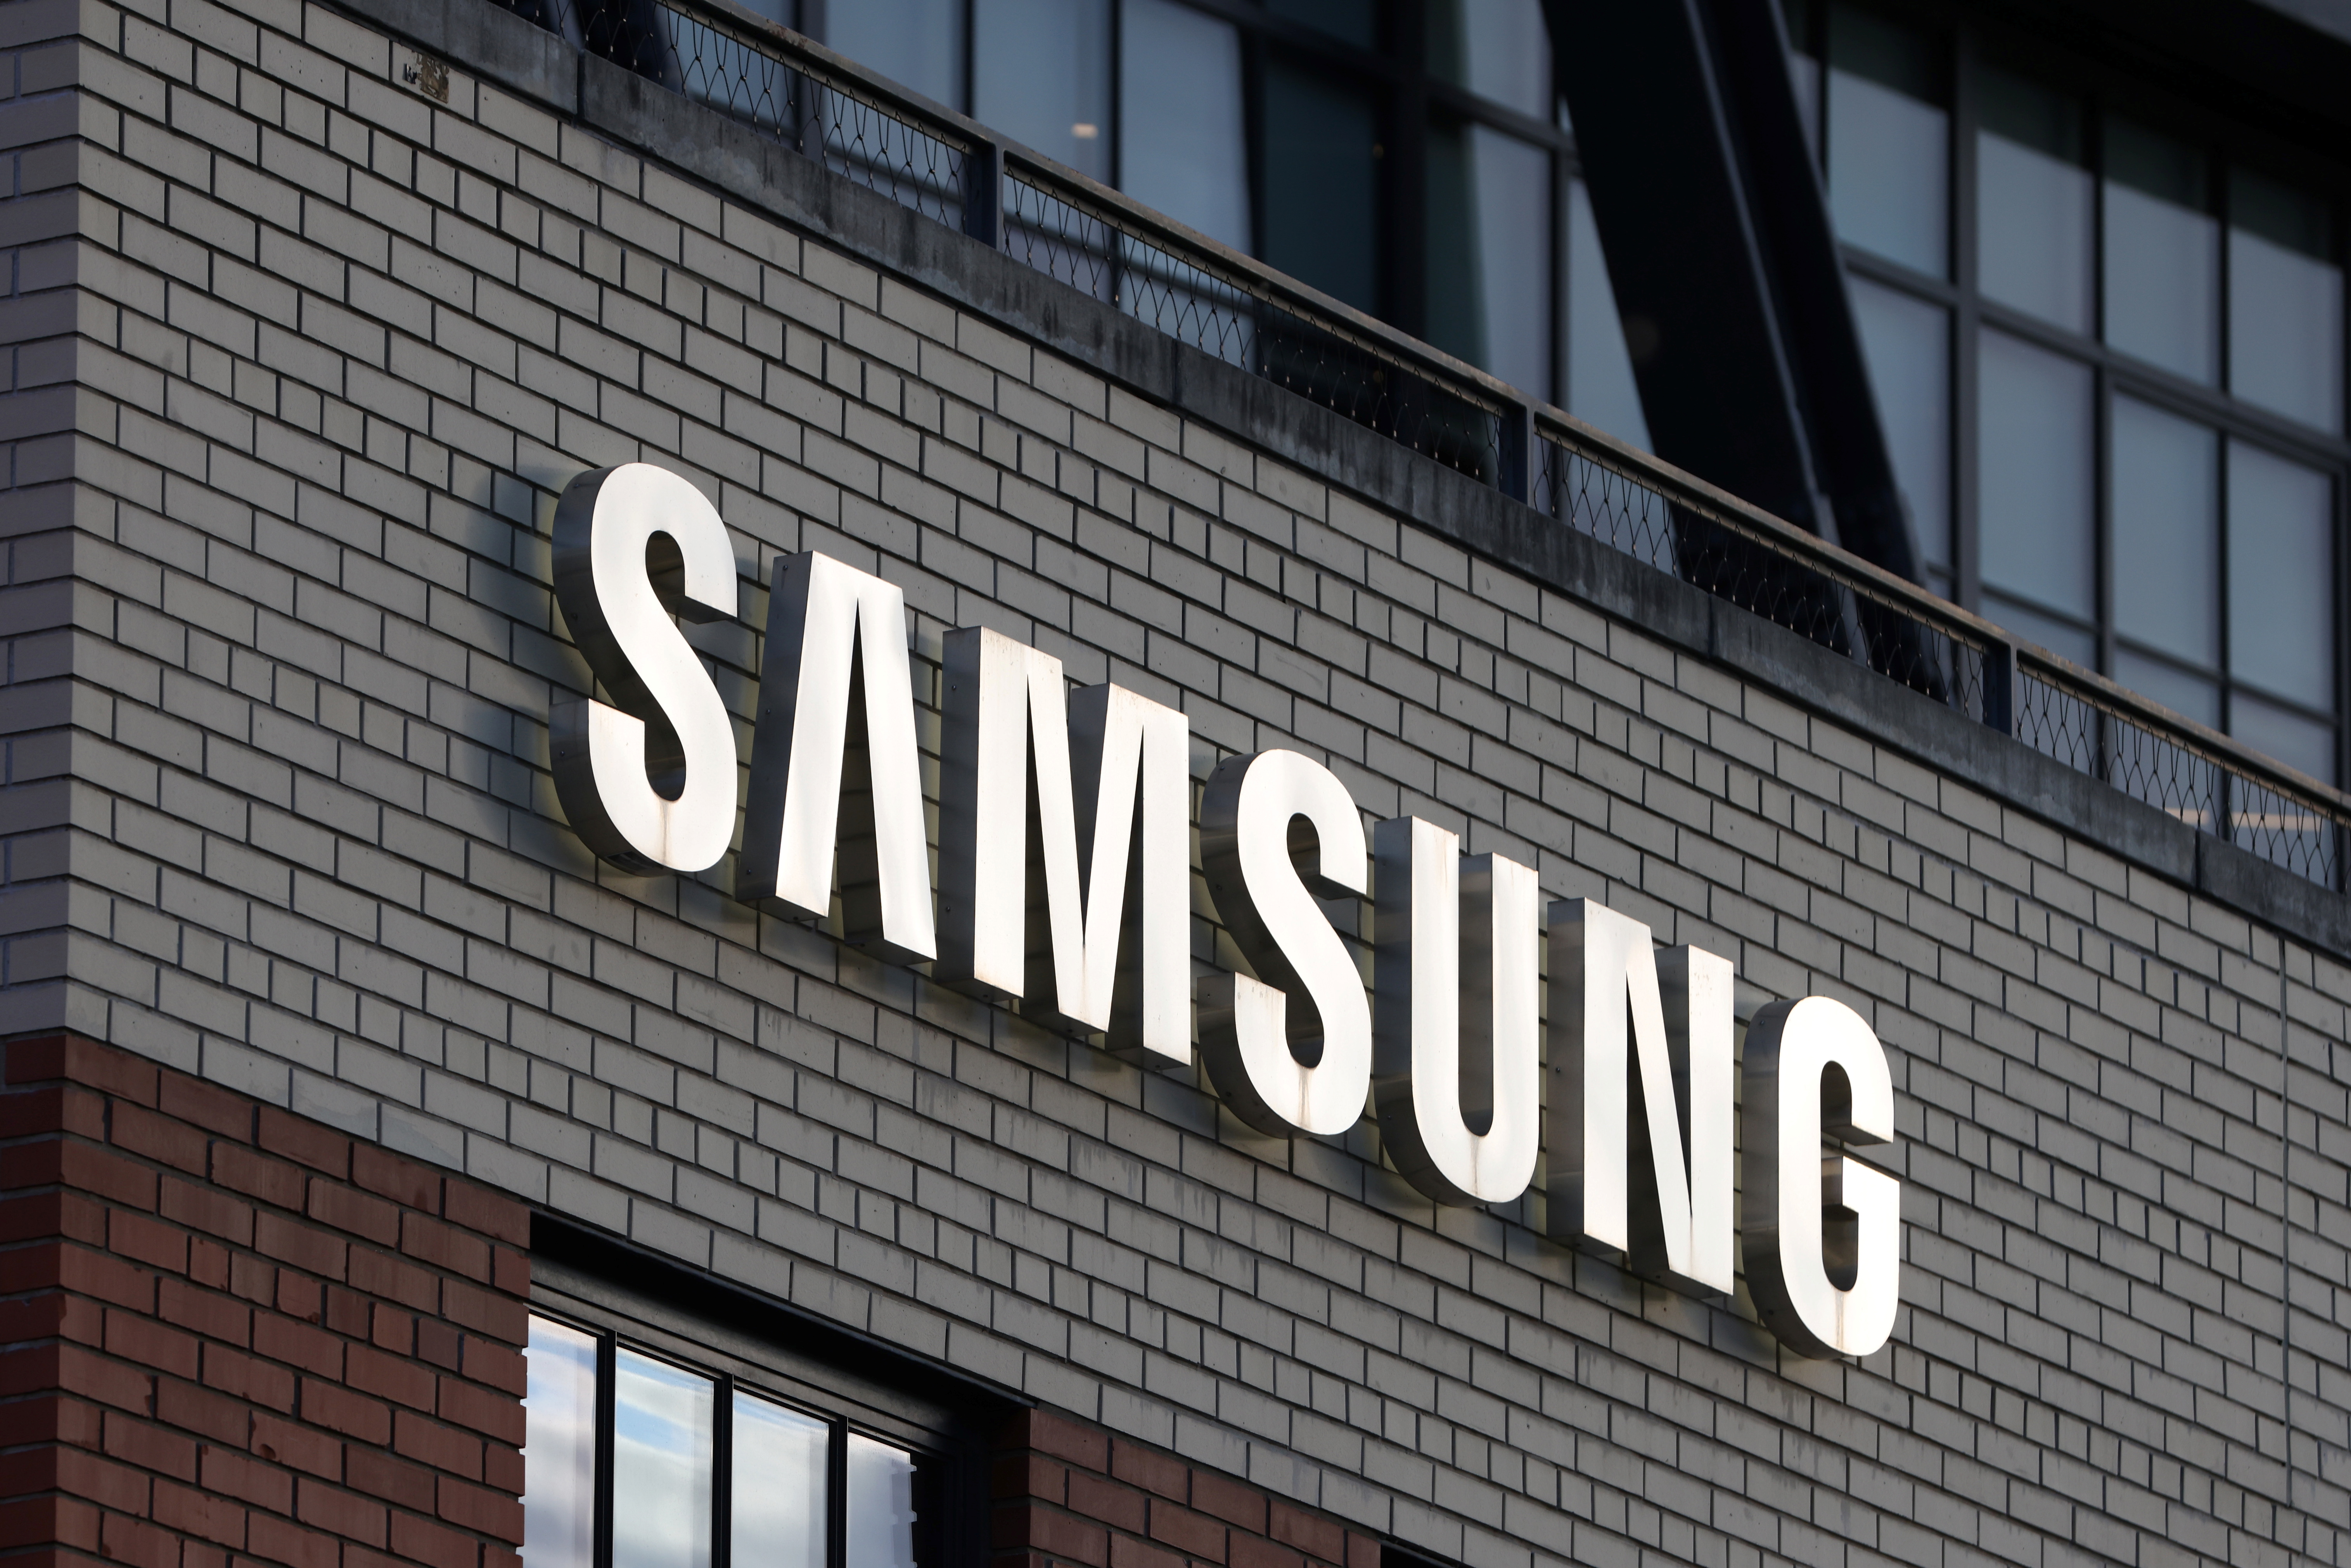 Biển báo được nhìn thấy tại Samsung 837 ở Manhattan, Thành phố New York